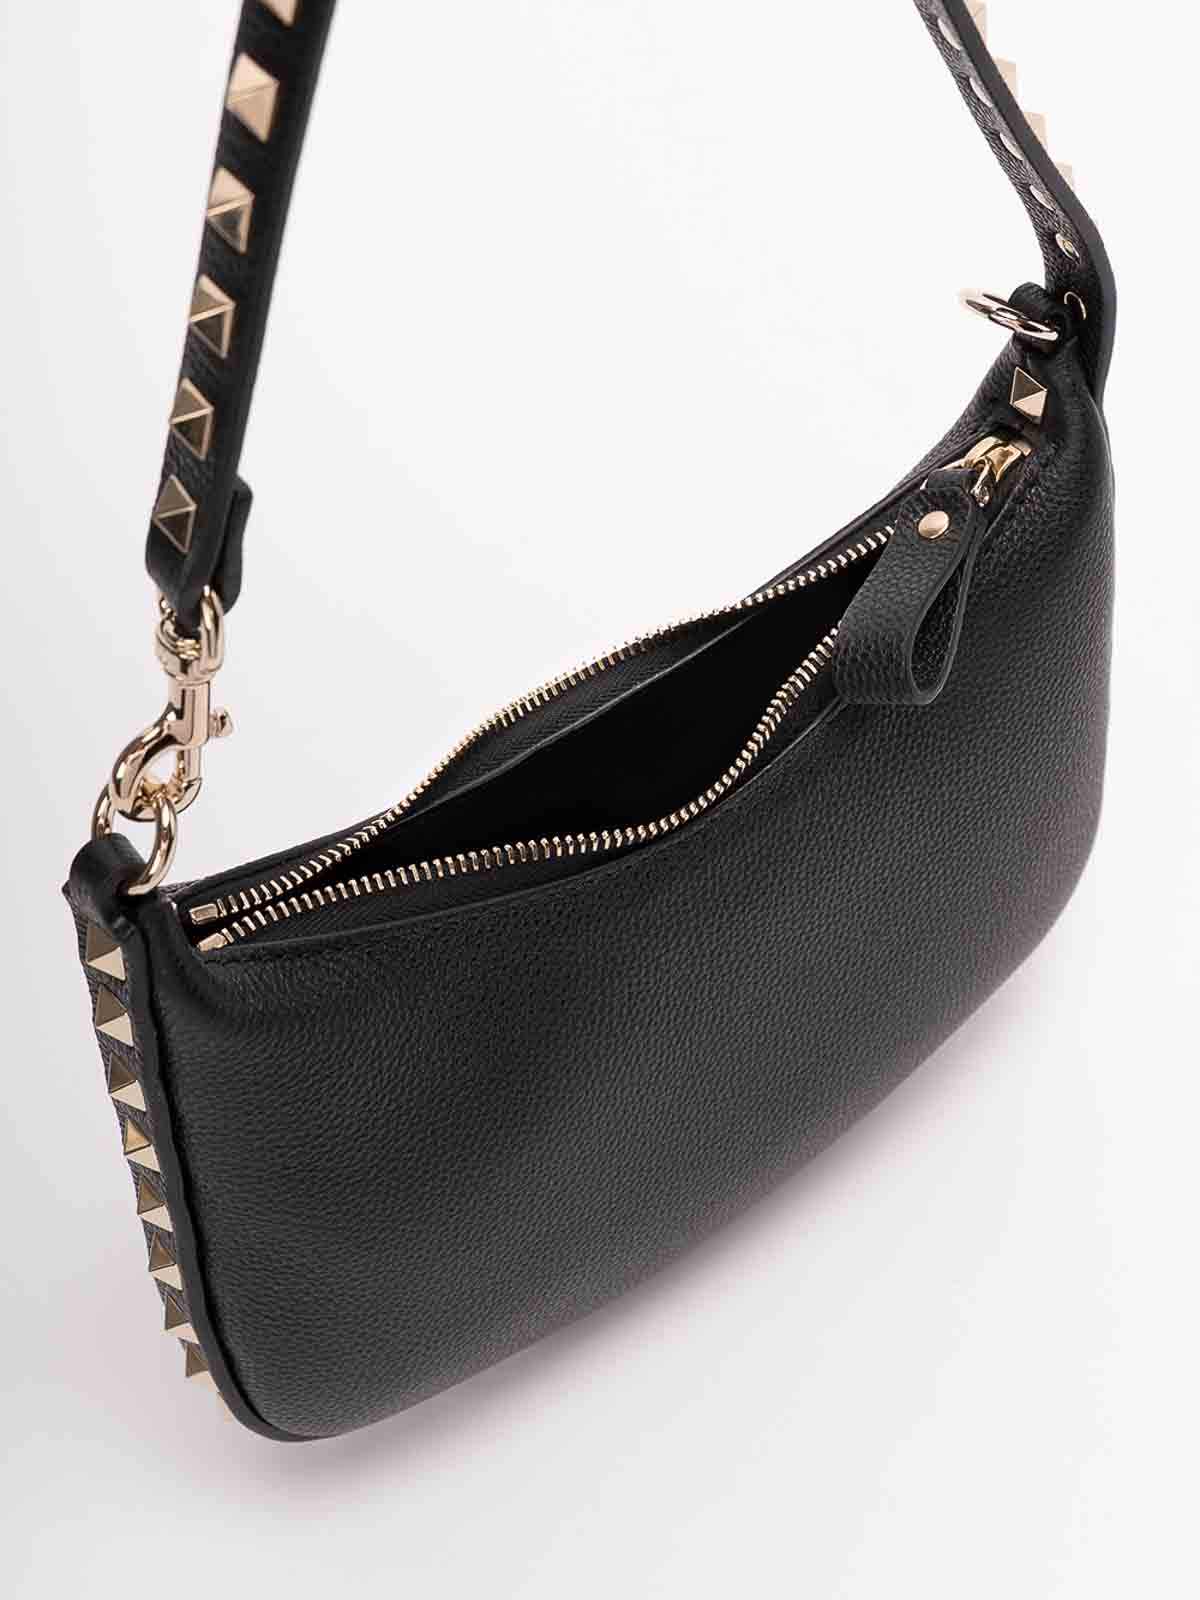 Valentino Garavani Small Leather Hobo Bag in Black